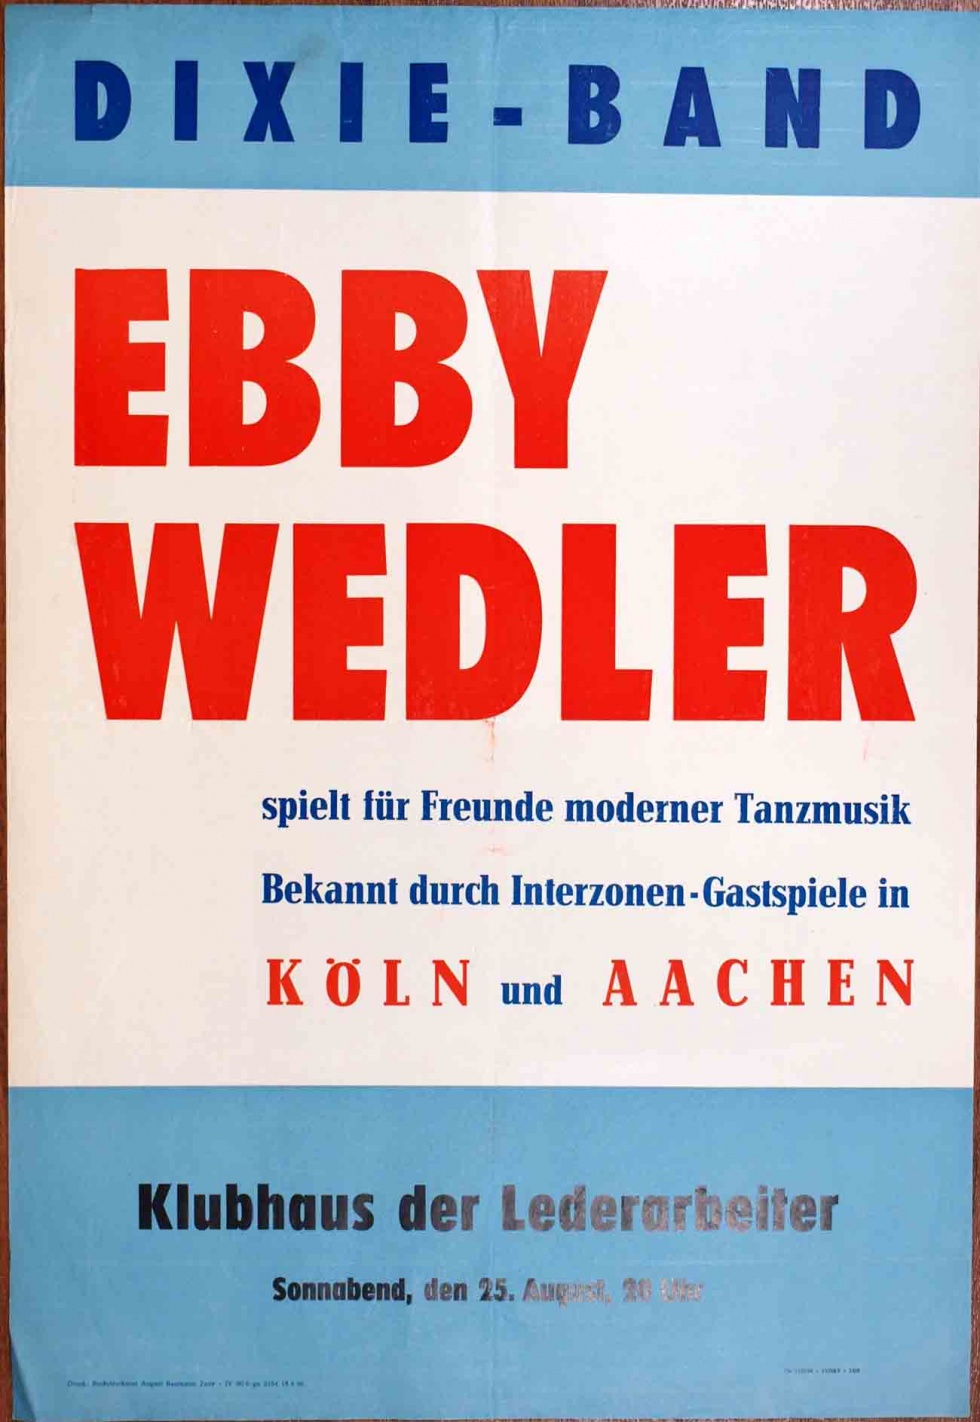 Plakat/Kultur &quot;Dixie-Band Ebby Wedler&quot;, DDR, Weißenfels 1956 (Museum Weißenfels - Schloss Neu-Augustusburg CC BY-NC-SA)